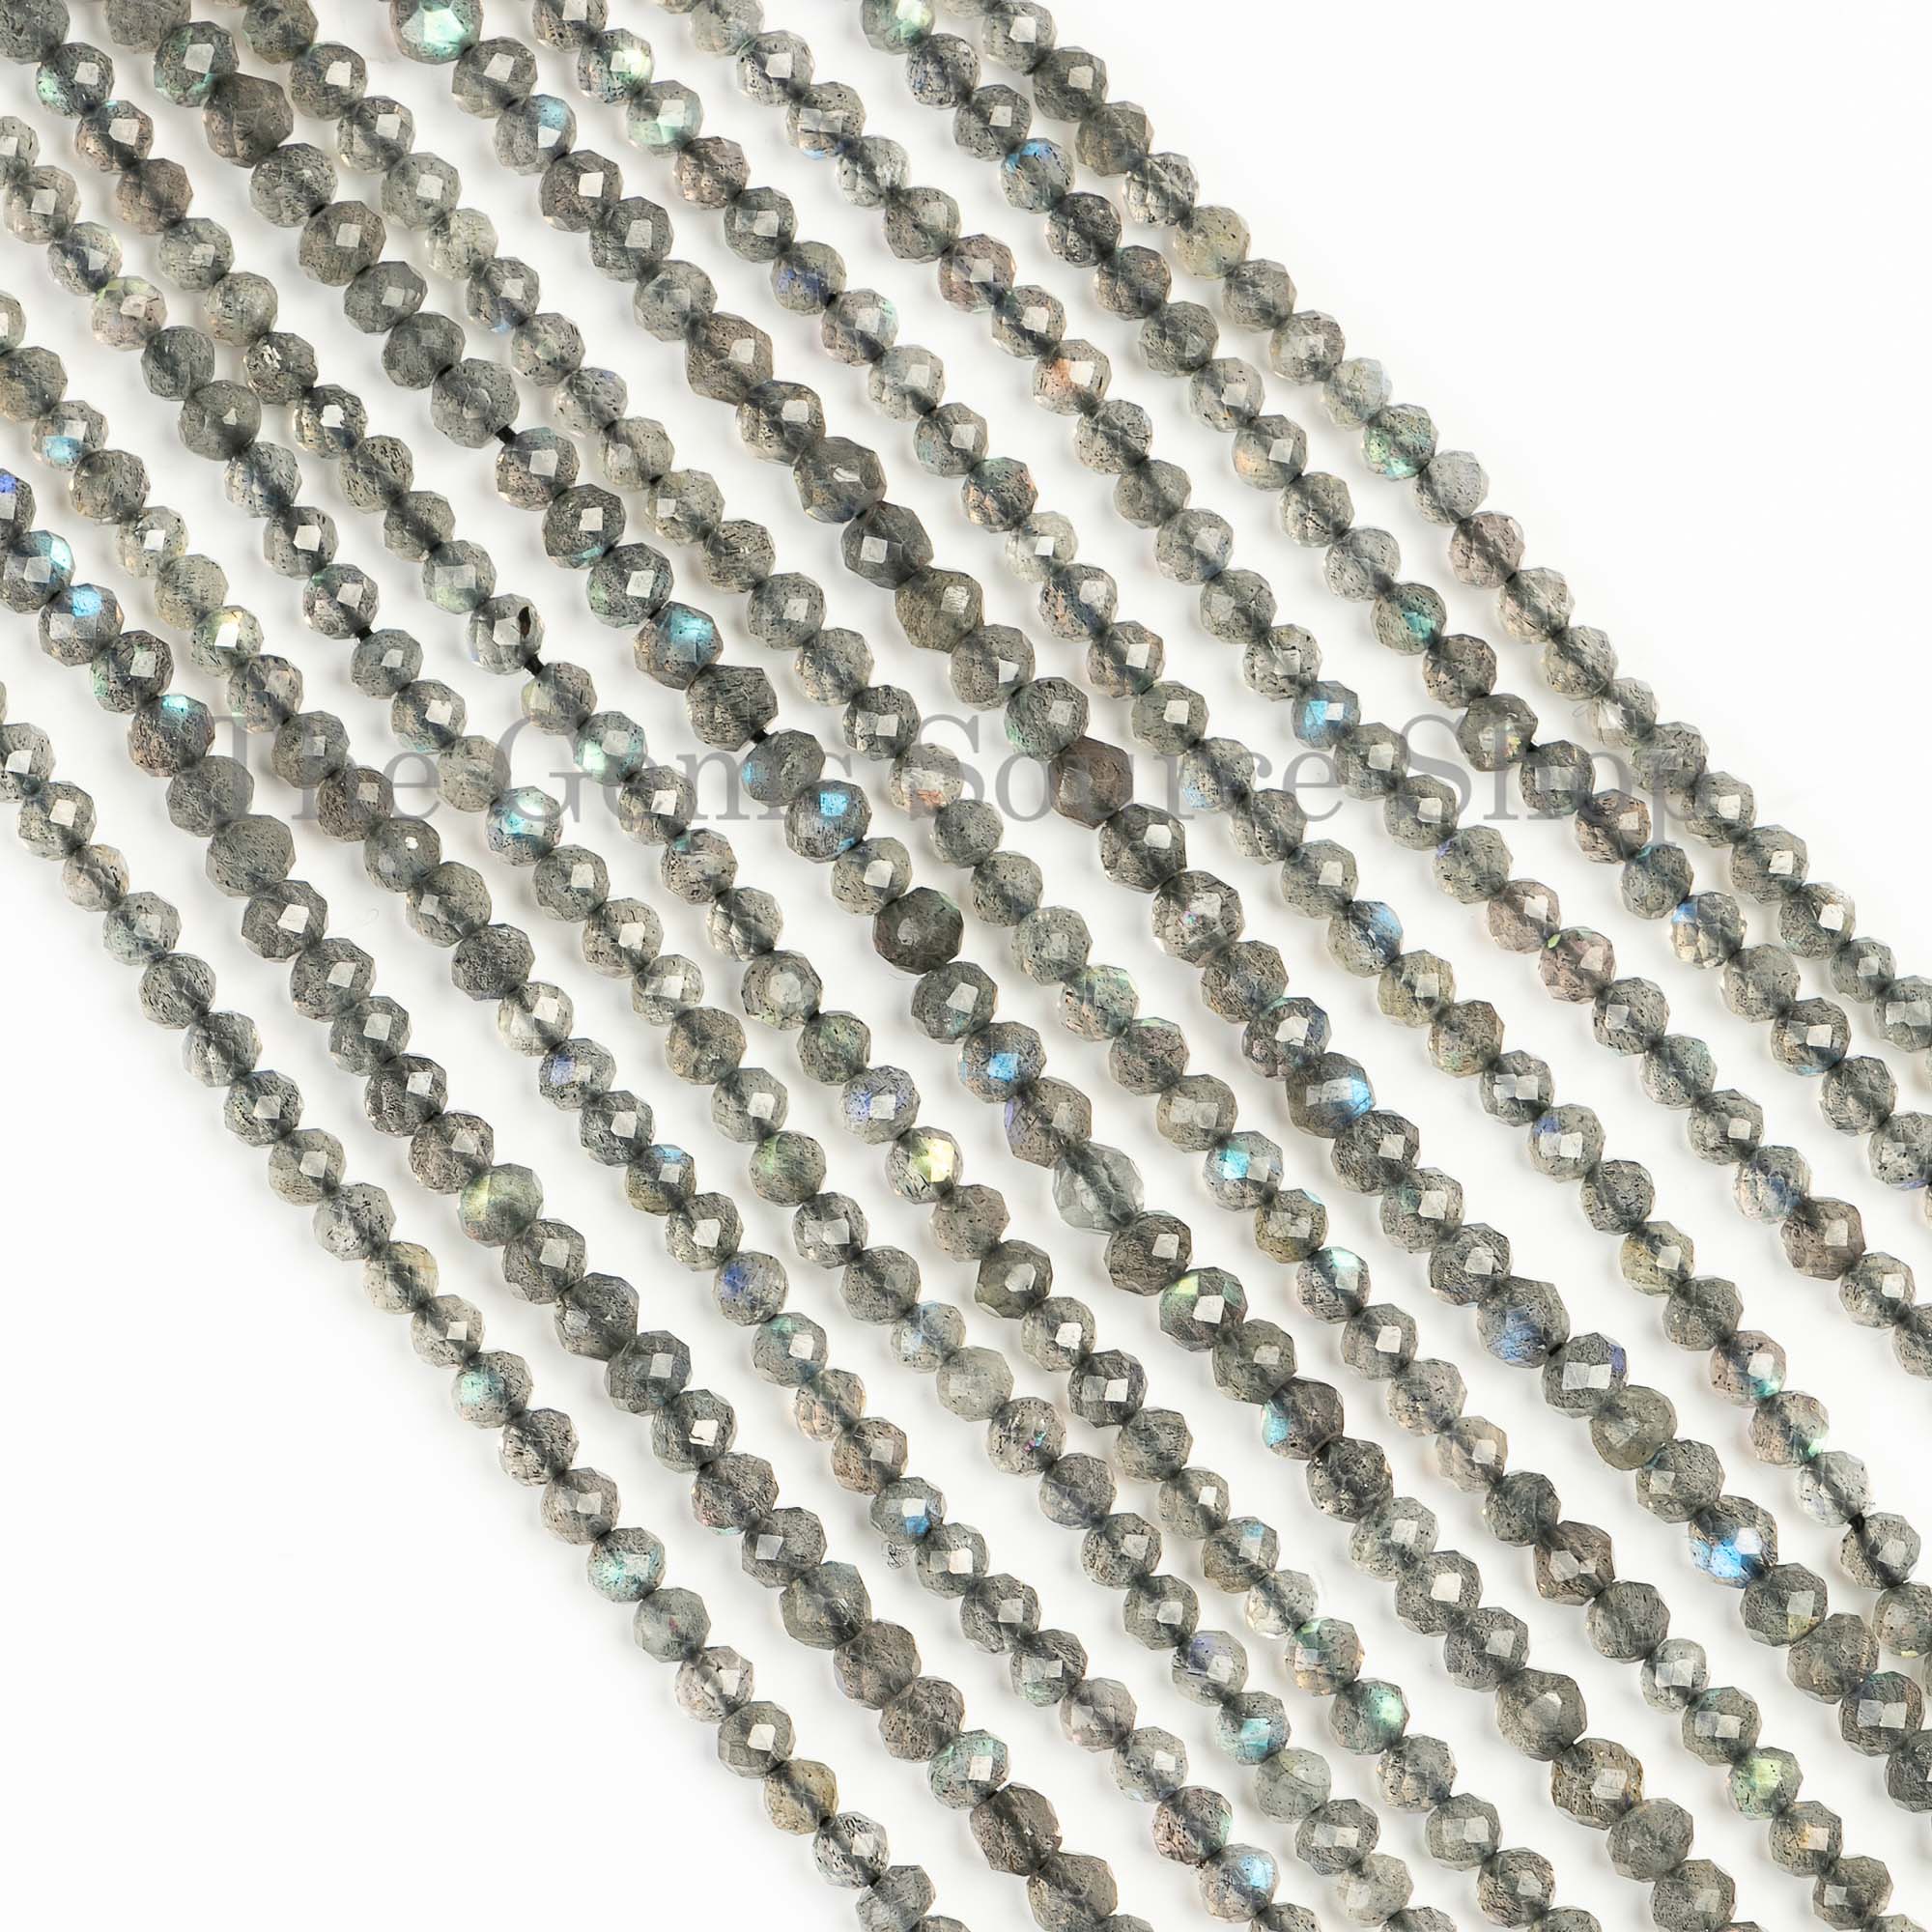 Labradorite Beads, Labradorite Faceted Beads, Labradorite Round Shape Beads, Gemstone Beads